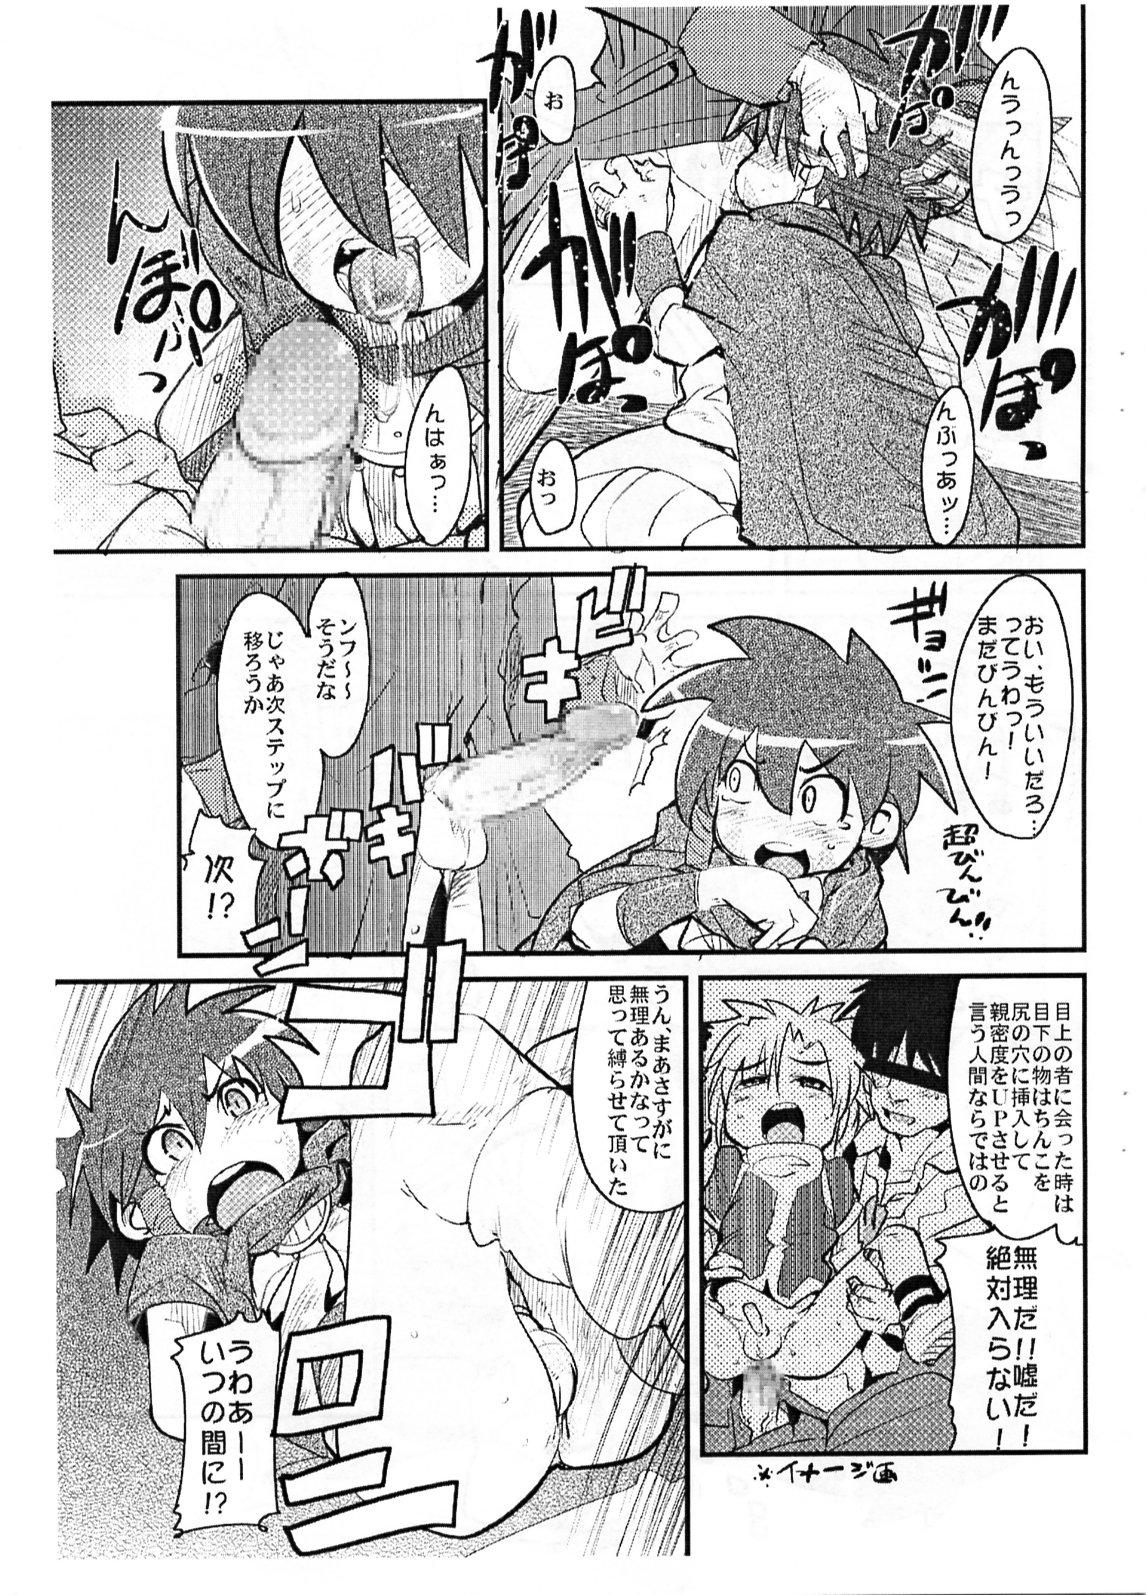 Couch Yaseiji ni iroiro oshieru hon nano da - Digimon savers Butt - Page 6